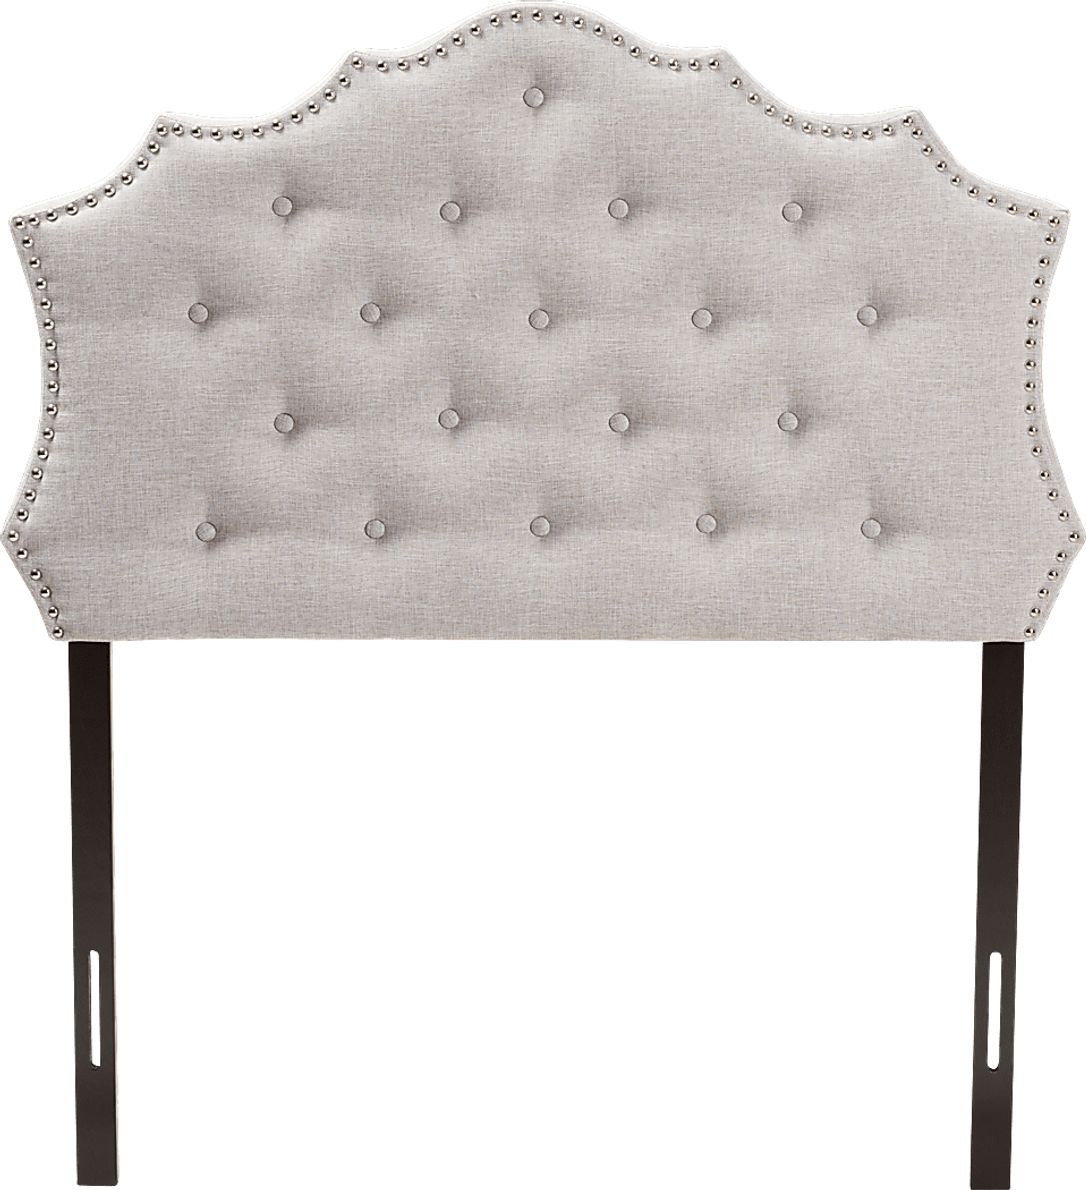 Poppleton Gray Twin Upholstered Headboard